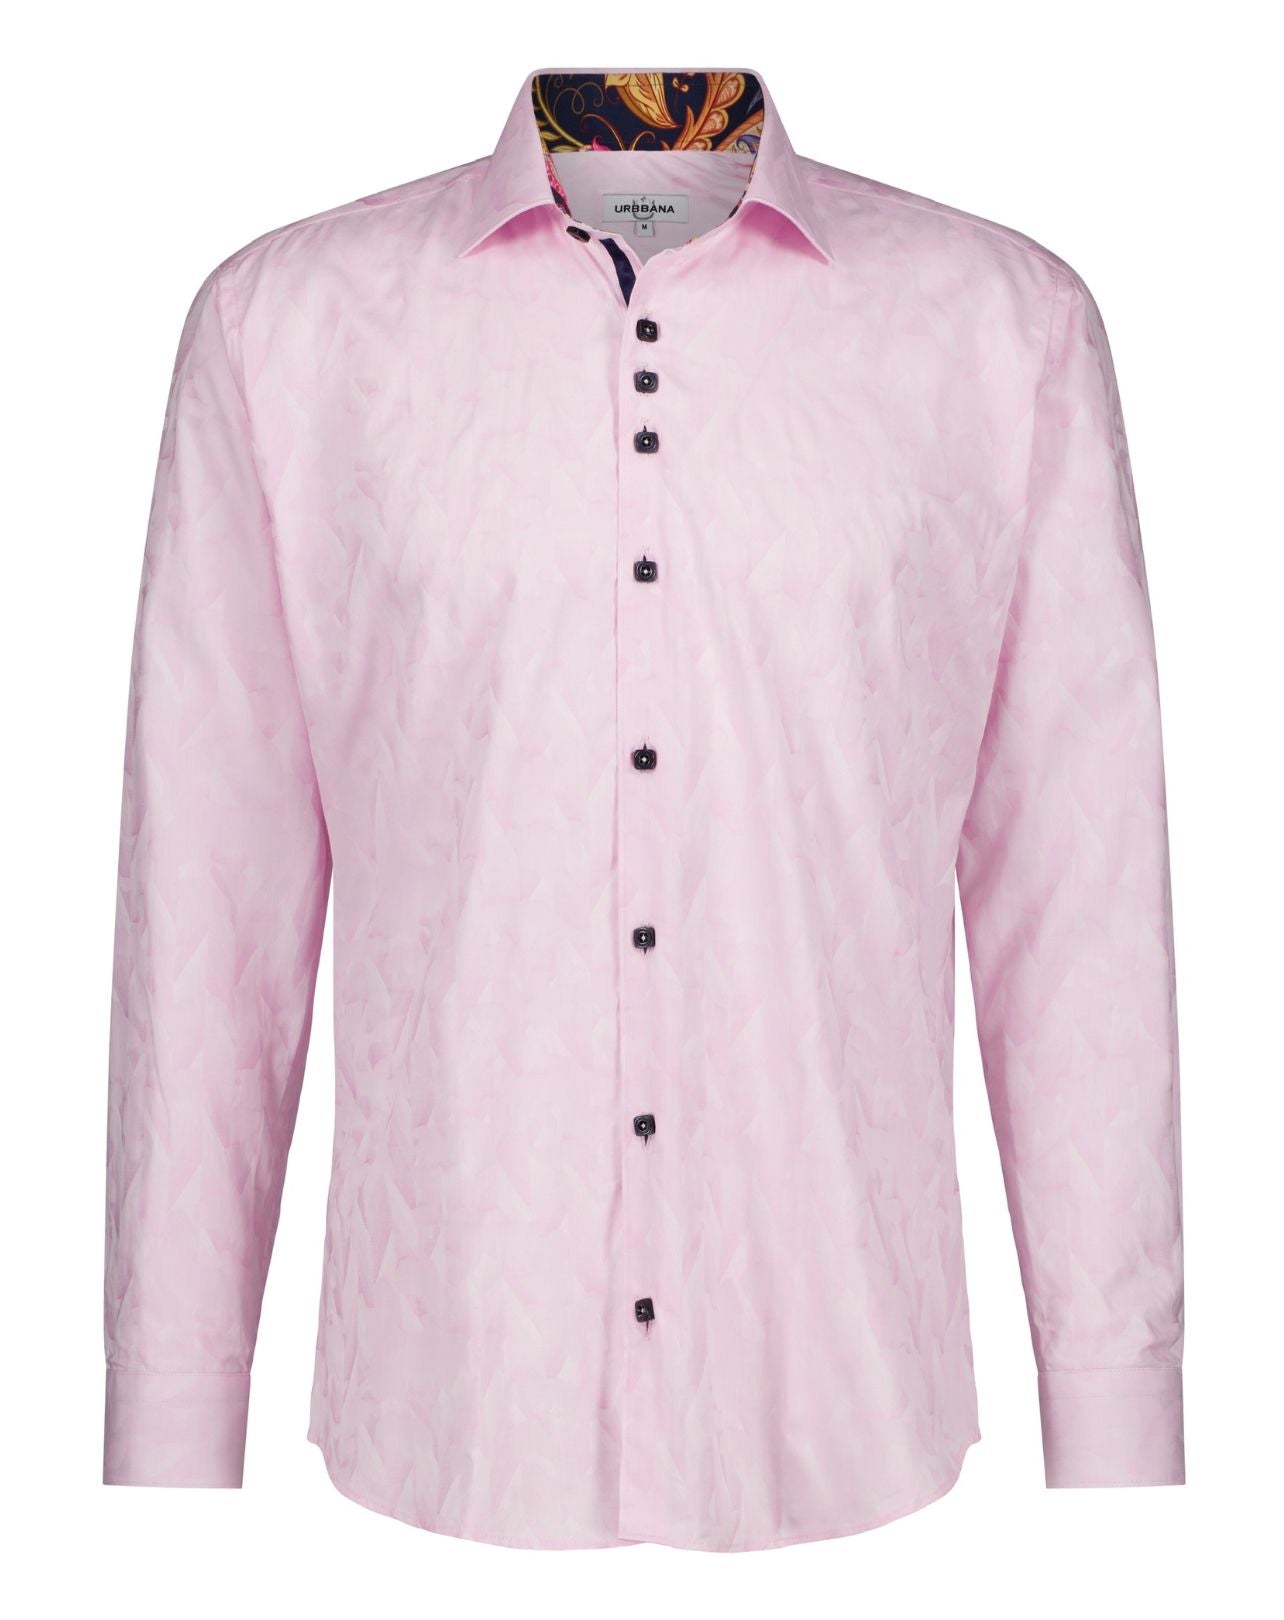 The Pink Nuno Shirt